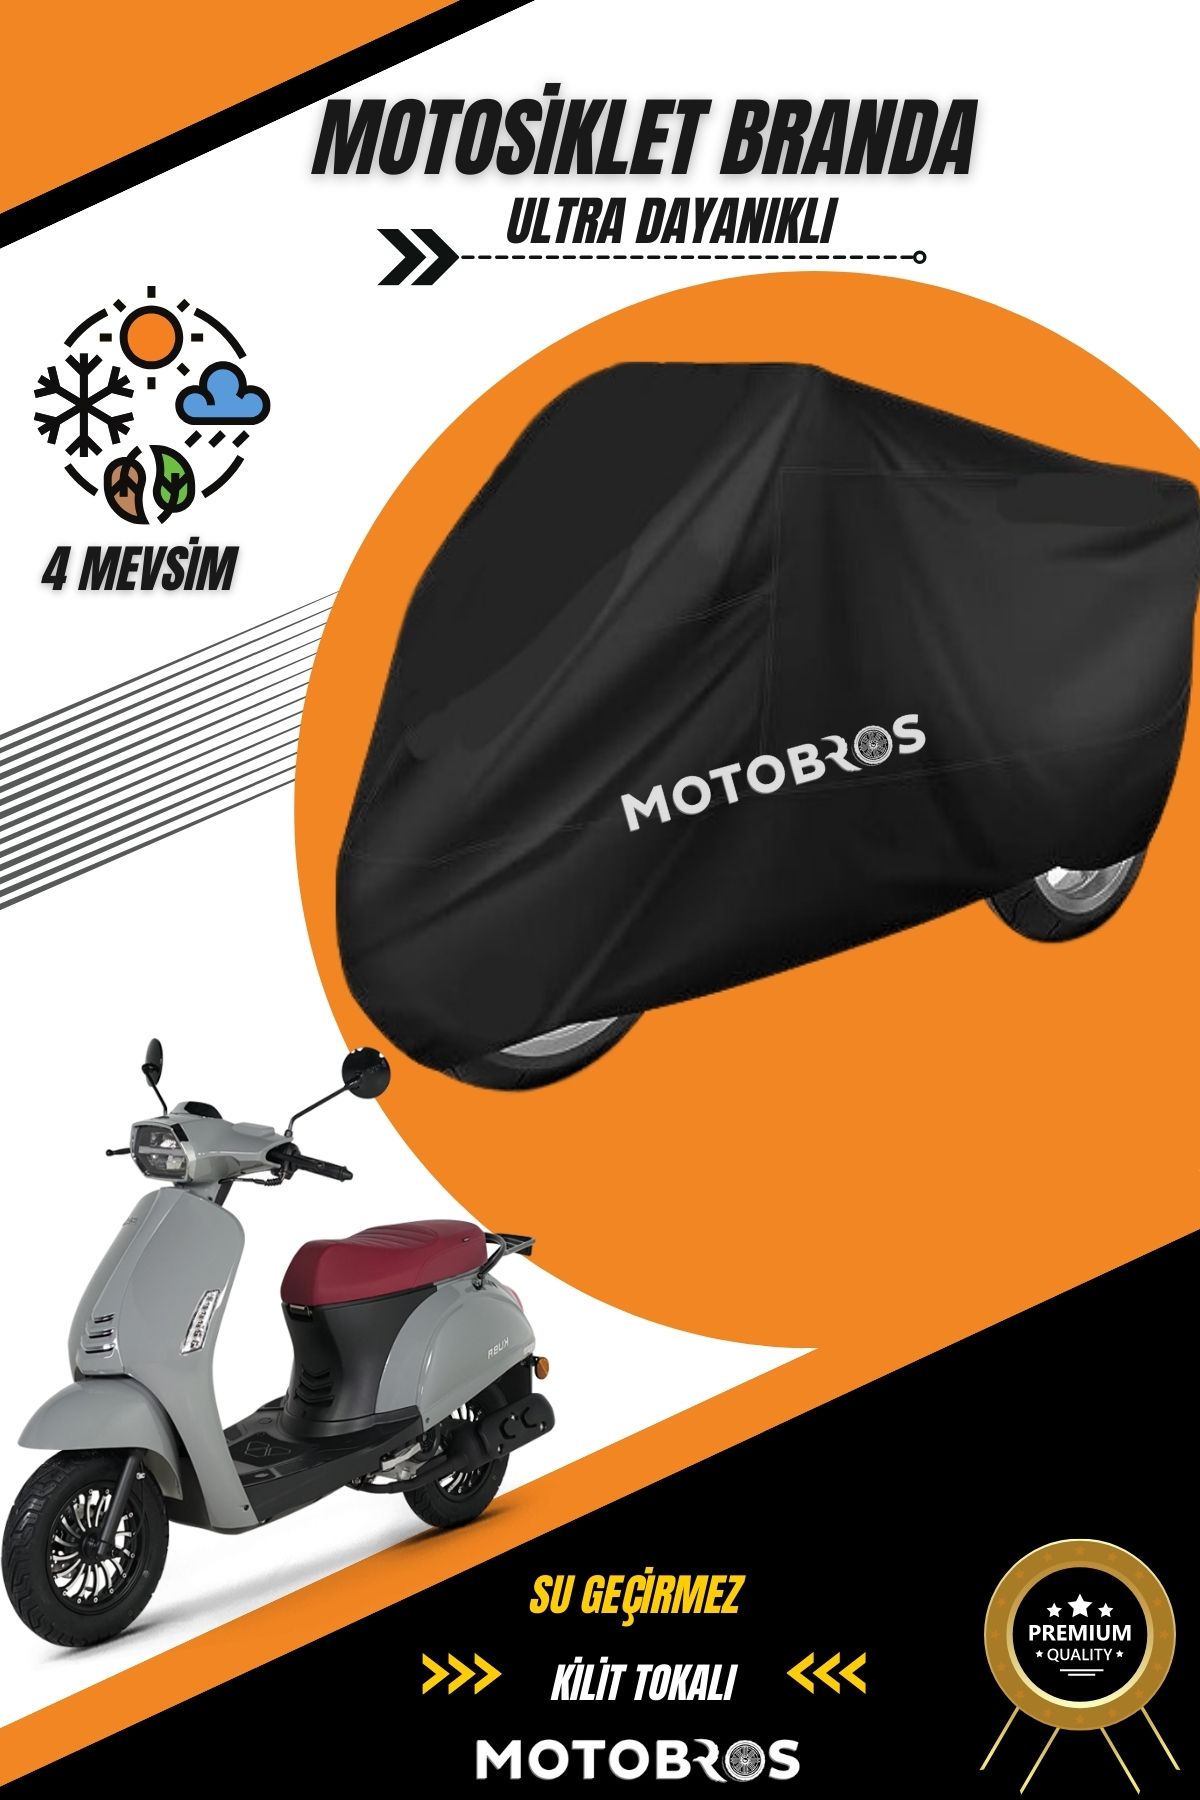 Motobros 50 CC MOTOR BRANDASI Siyah Su Geçirmez Dayanıklı Motosiklet Brandası (EN KALIN) Kumaş